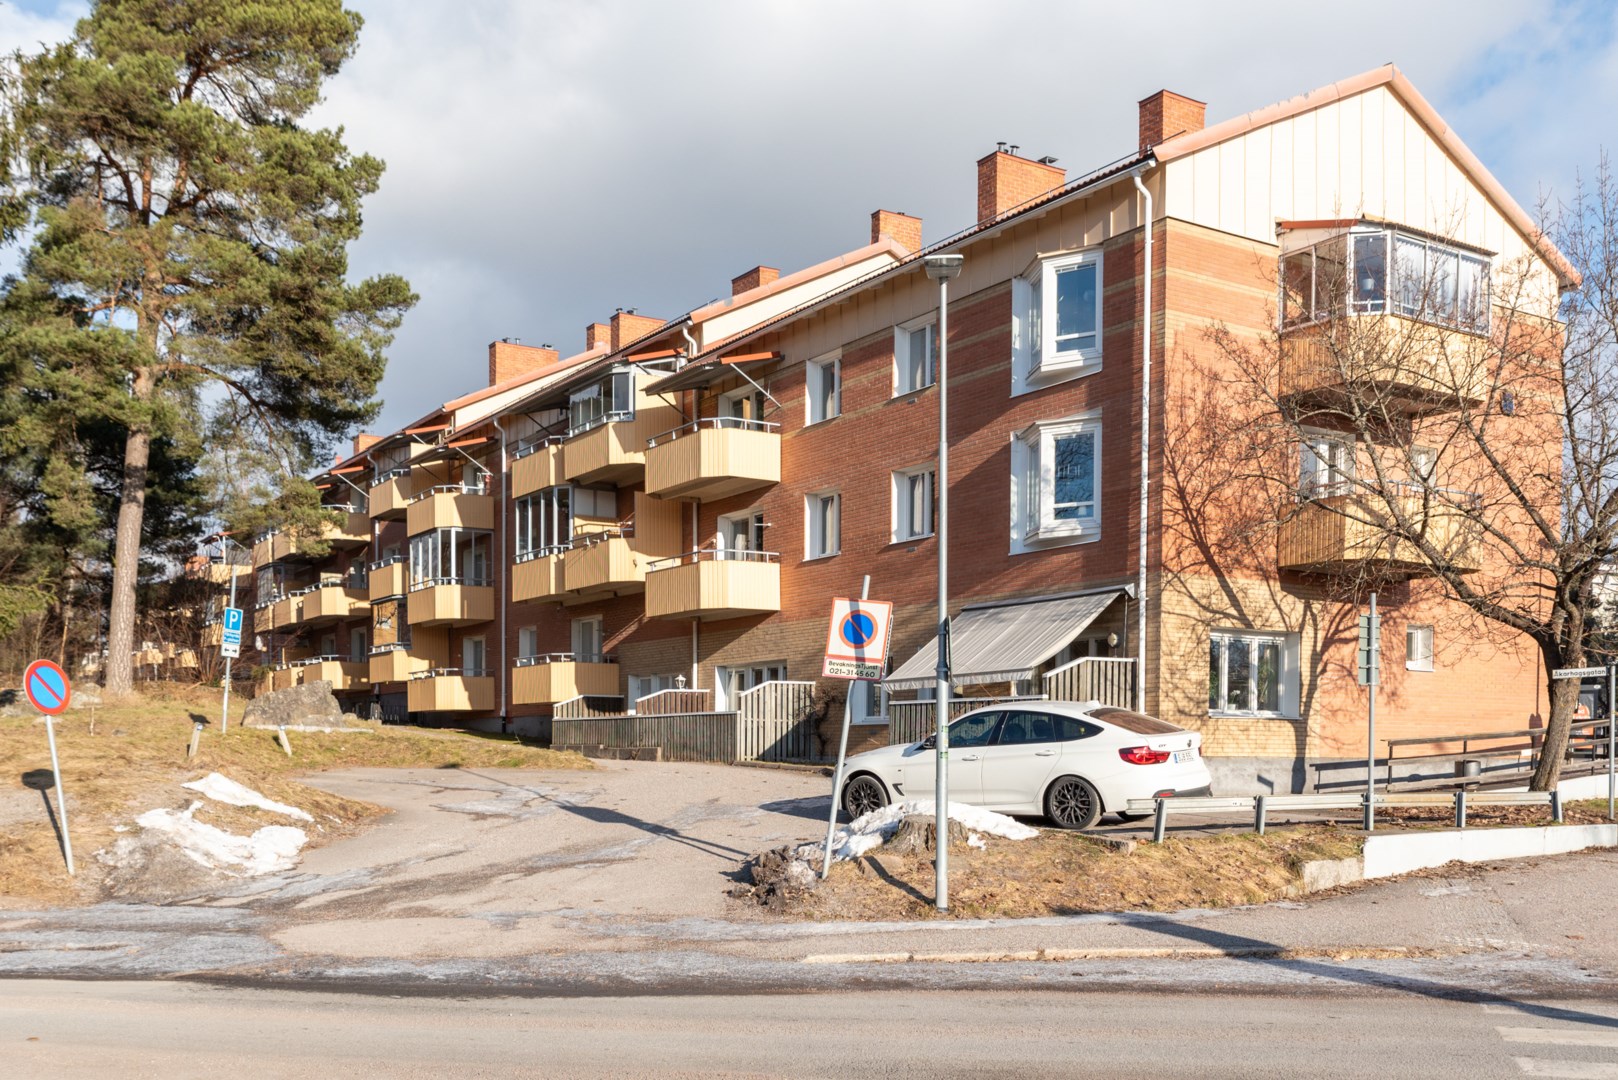 Bostadsbild från Malmabergsgatan 79B, Såld i Malmaberg, Västerås